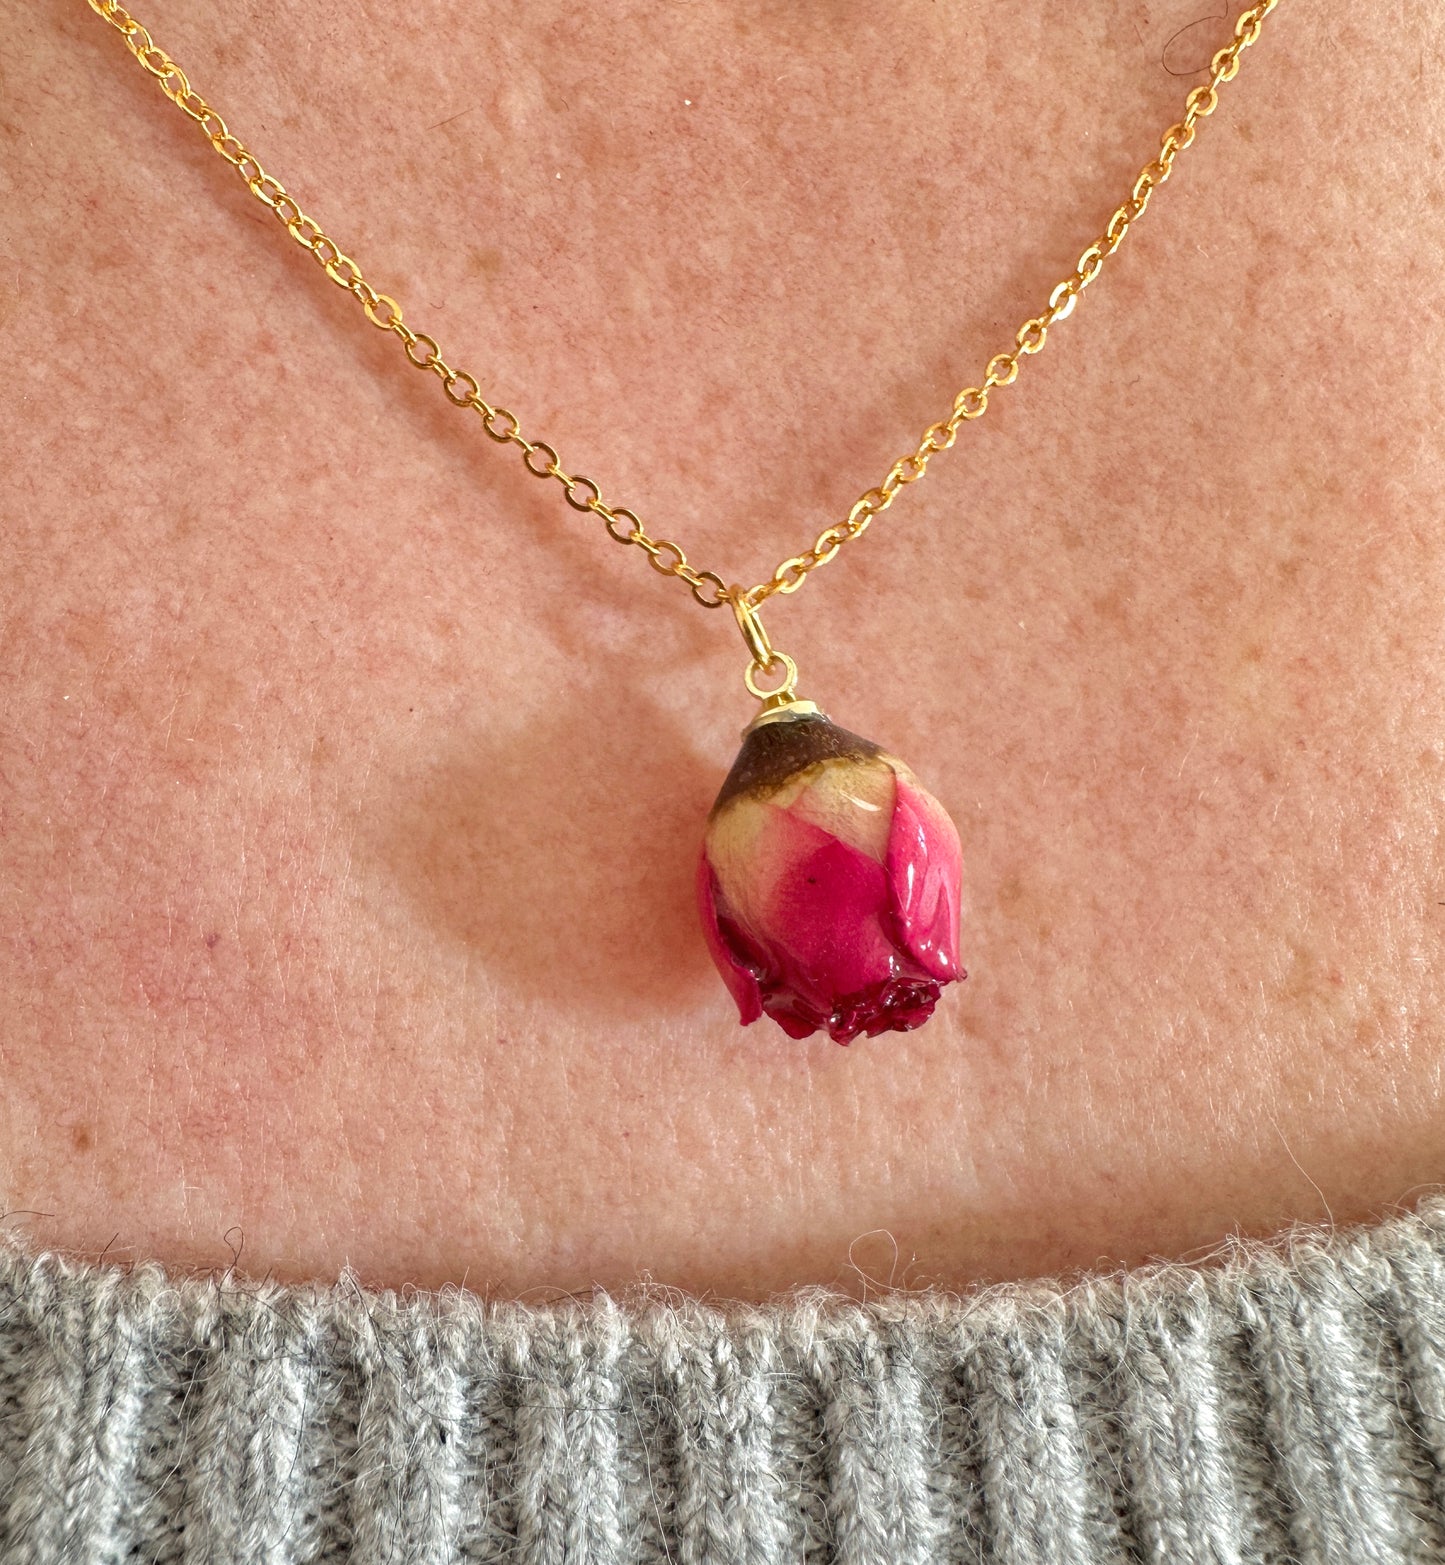 Preserved Rosebud Gold necklace.